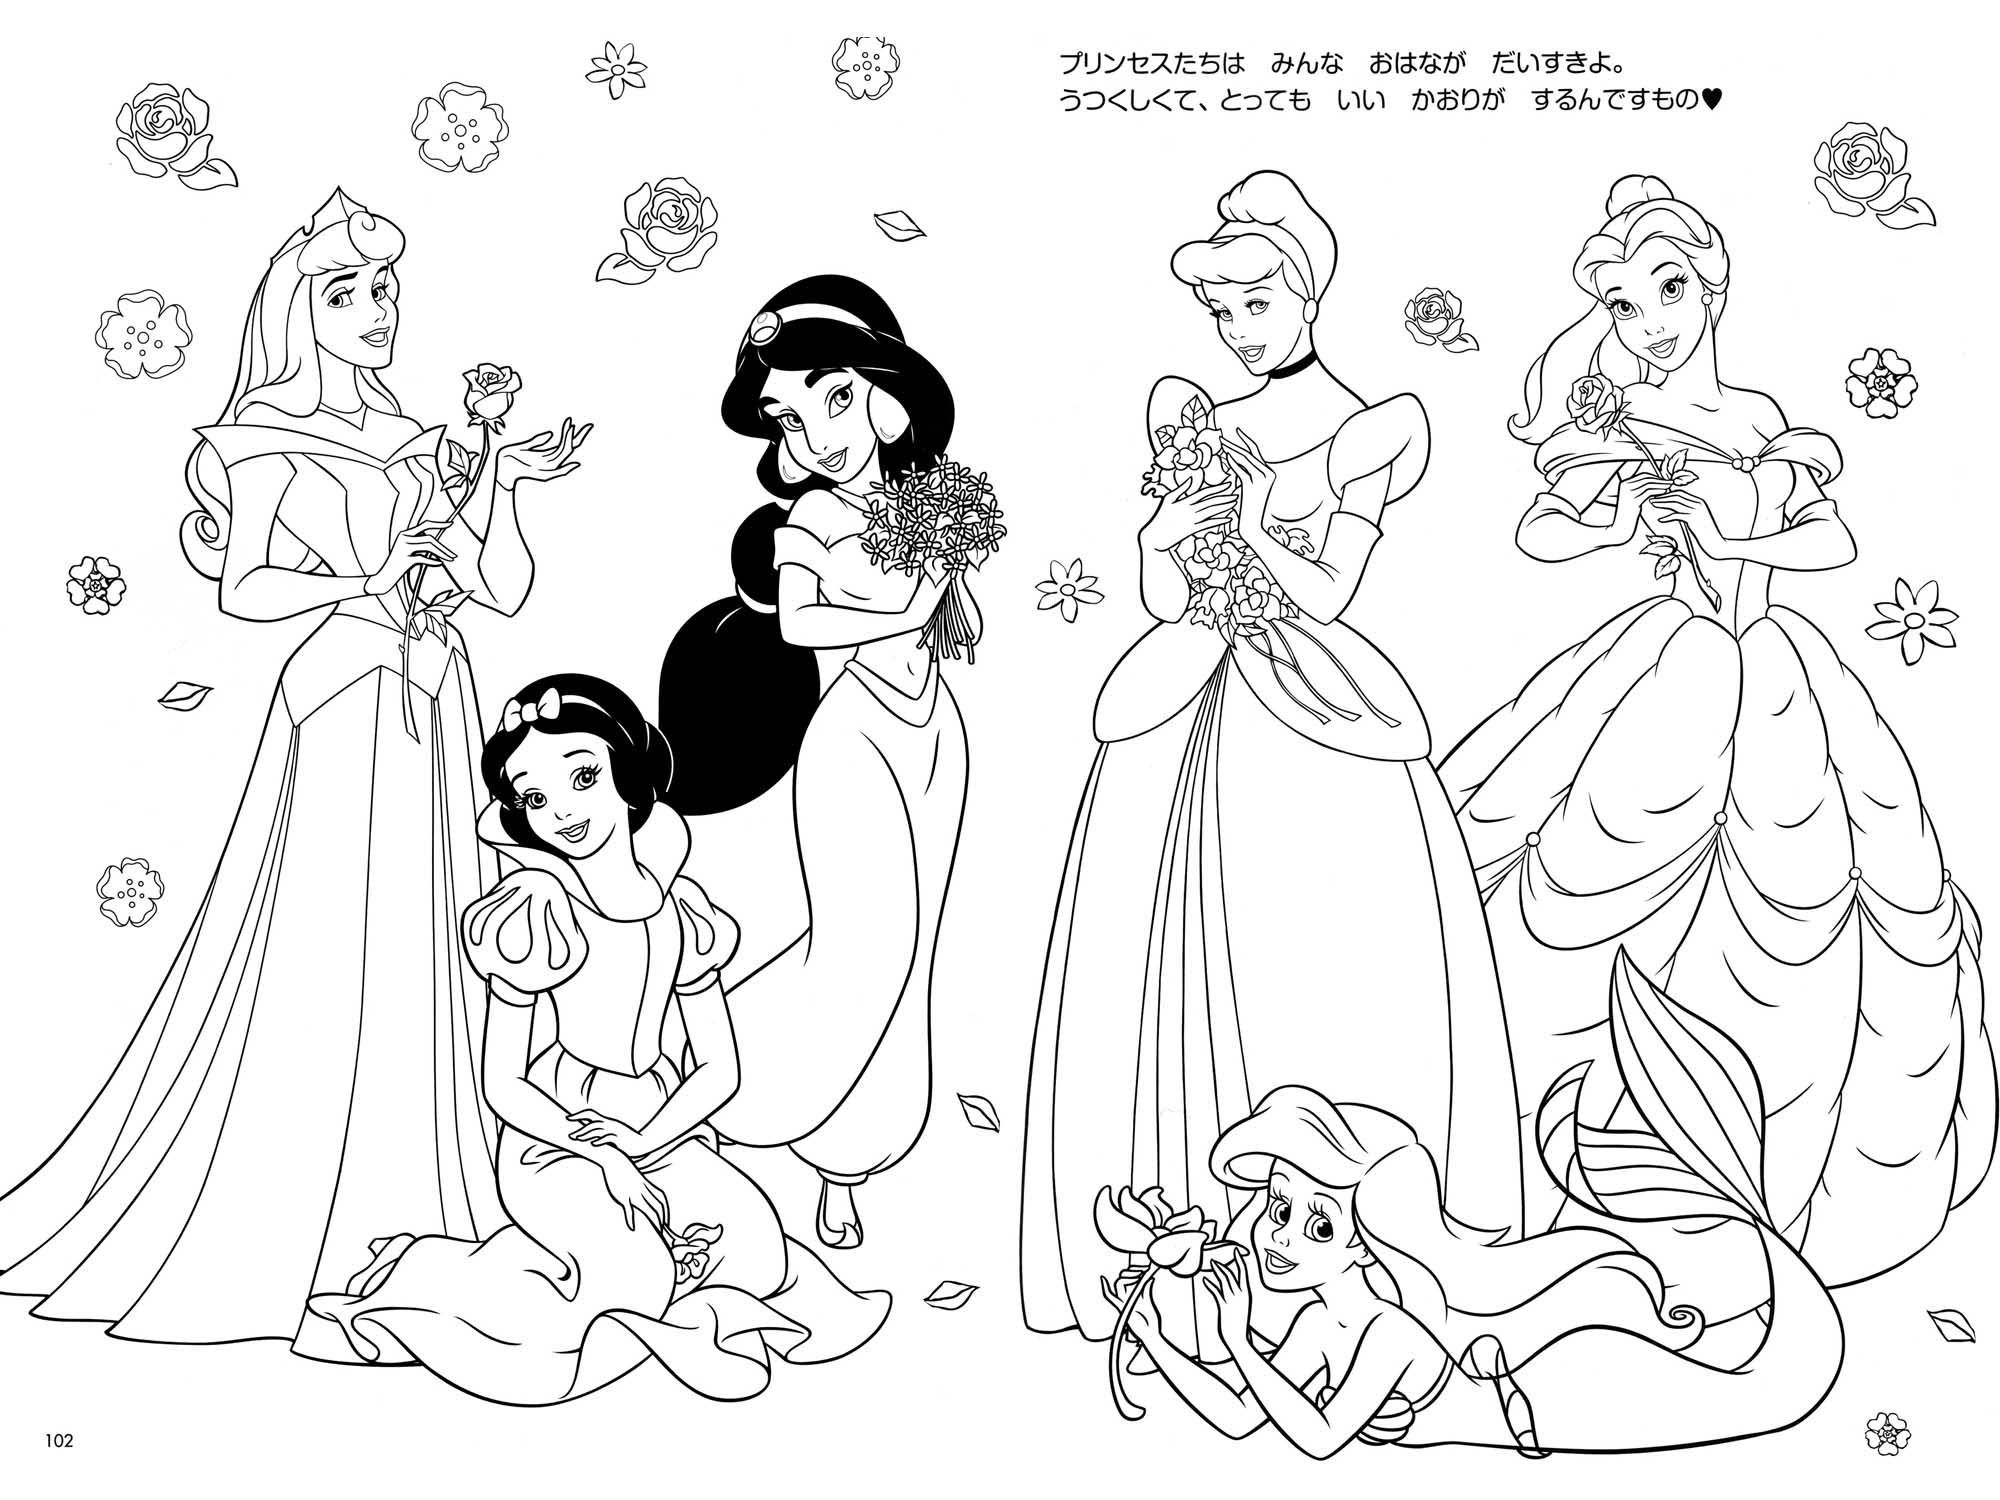 Disney princess coloring pages â coloringrocks disney princess coloring pages princess coloring pages printables disney coloring pages